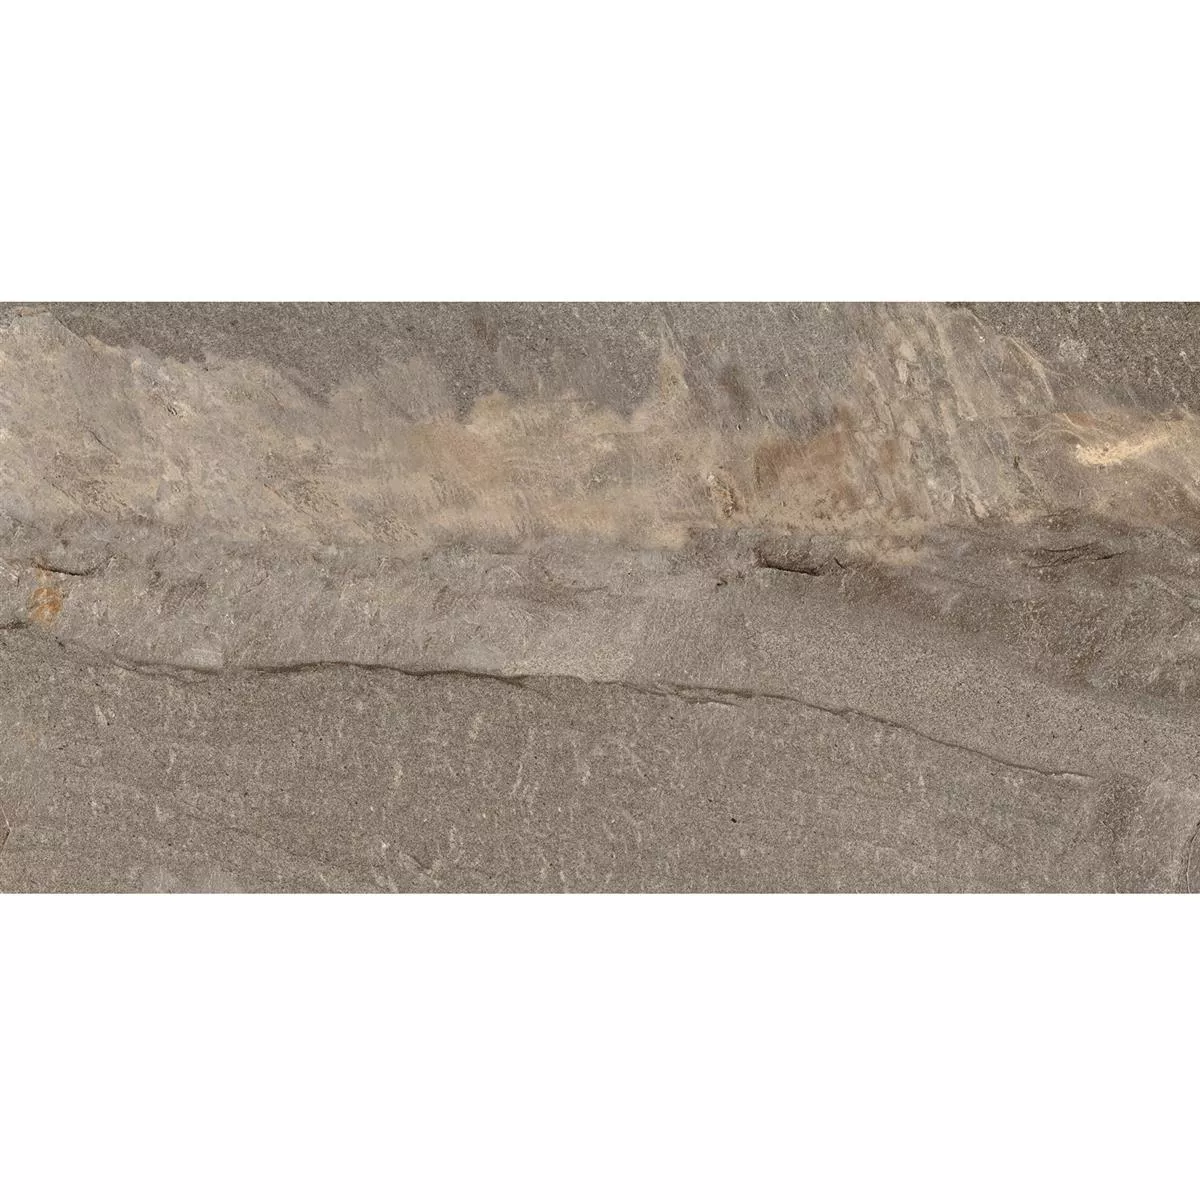 Πρότυπο Πλακάκια Δαπέδου Homeland Eμφάνιση Φυσικής Πέτρας R10 Μπρούντζος 30x60cm